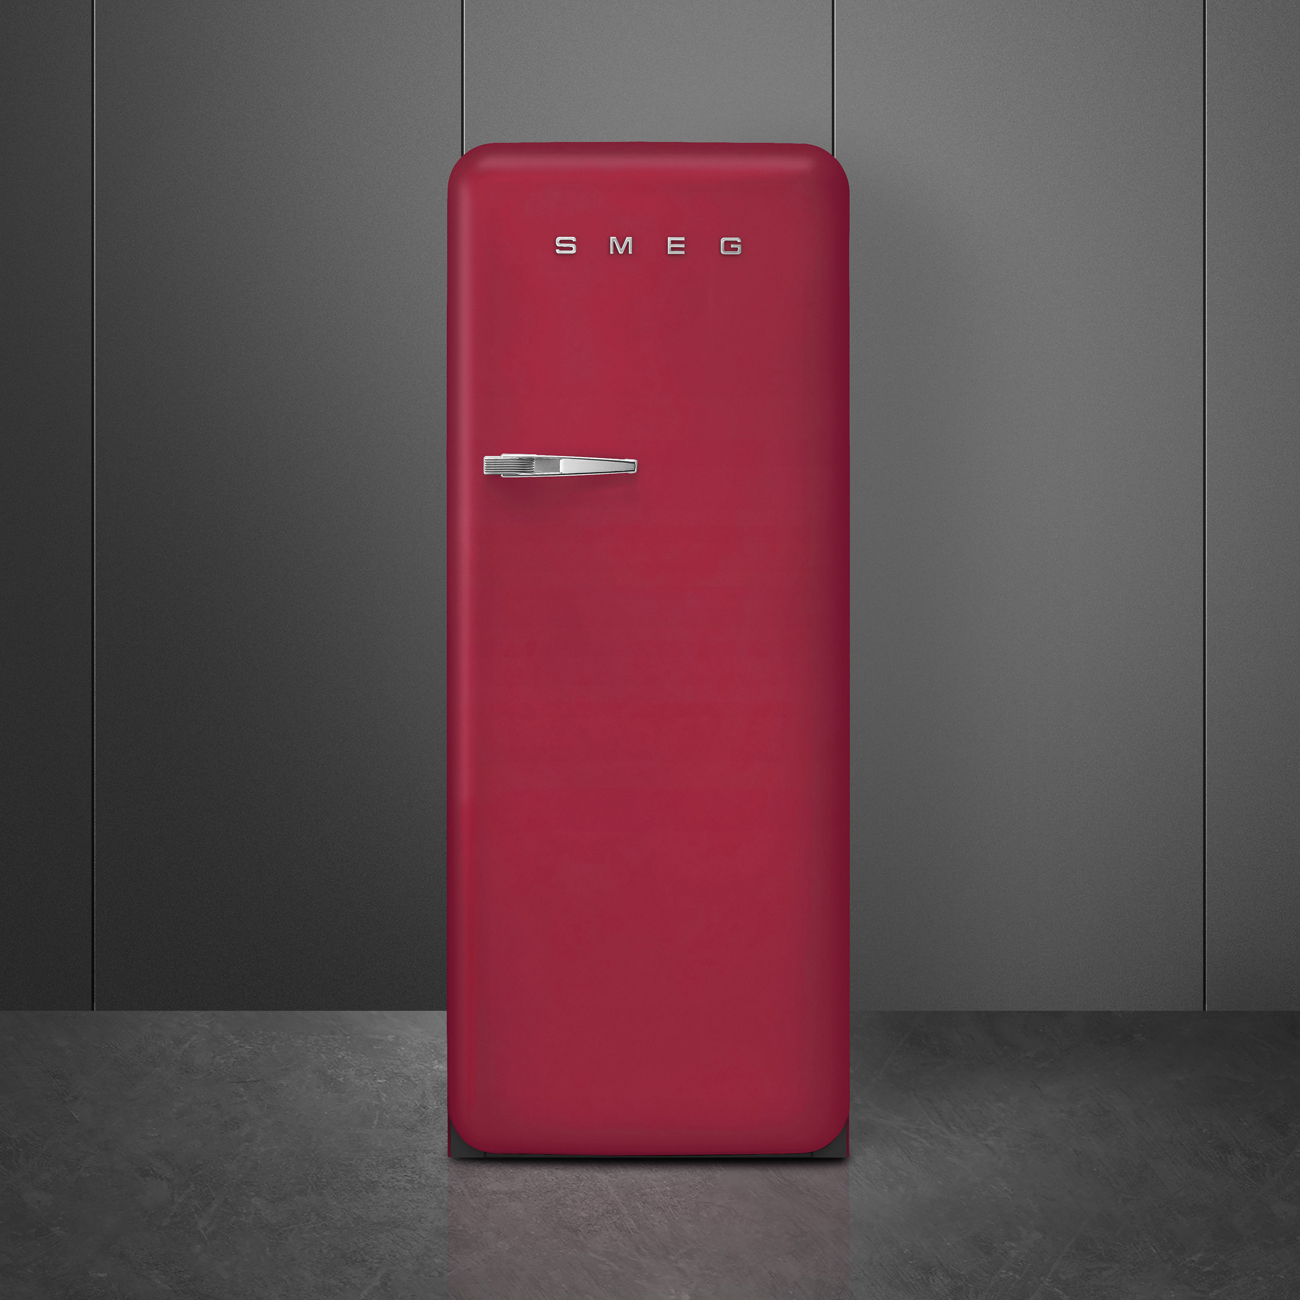 Ruby Red refrigerator - Smeg_5